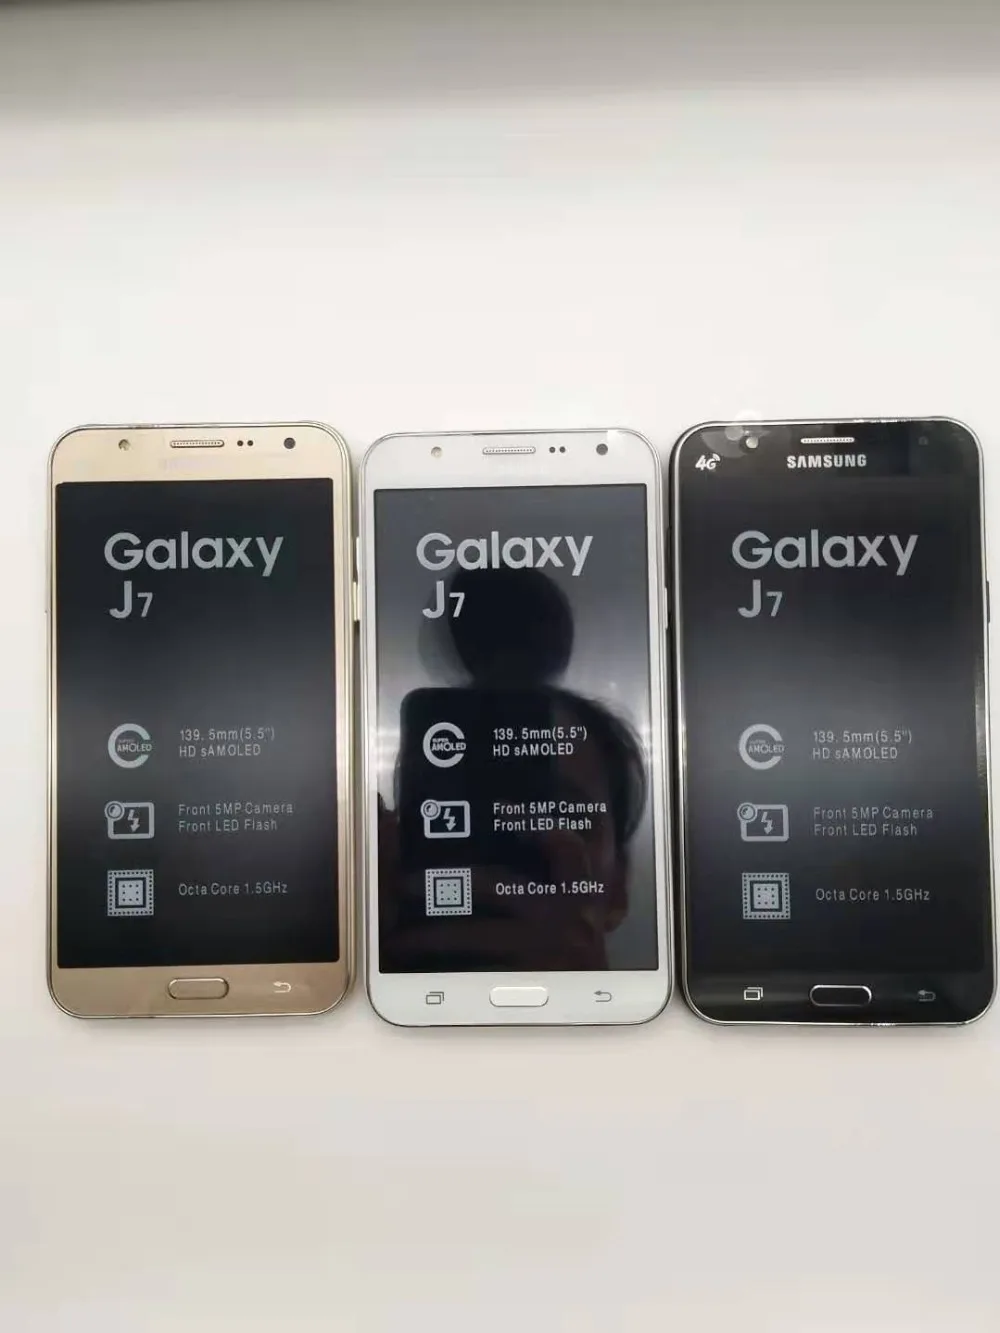 samsung Galaxy J7, разблокированный Duos GSM, 4G LTE, Android, мобильный телефон, четыре ядра, две sim-карты, 5,5 дюймов ram, 1,5 ГБ rom, 16 ГБ, отремонтированный